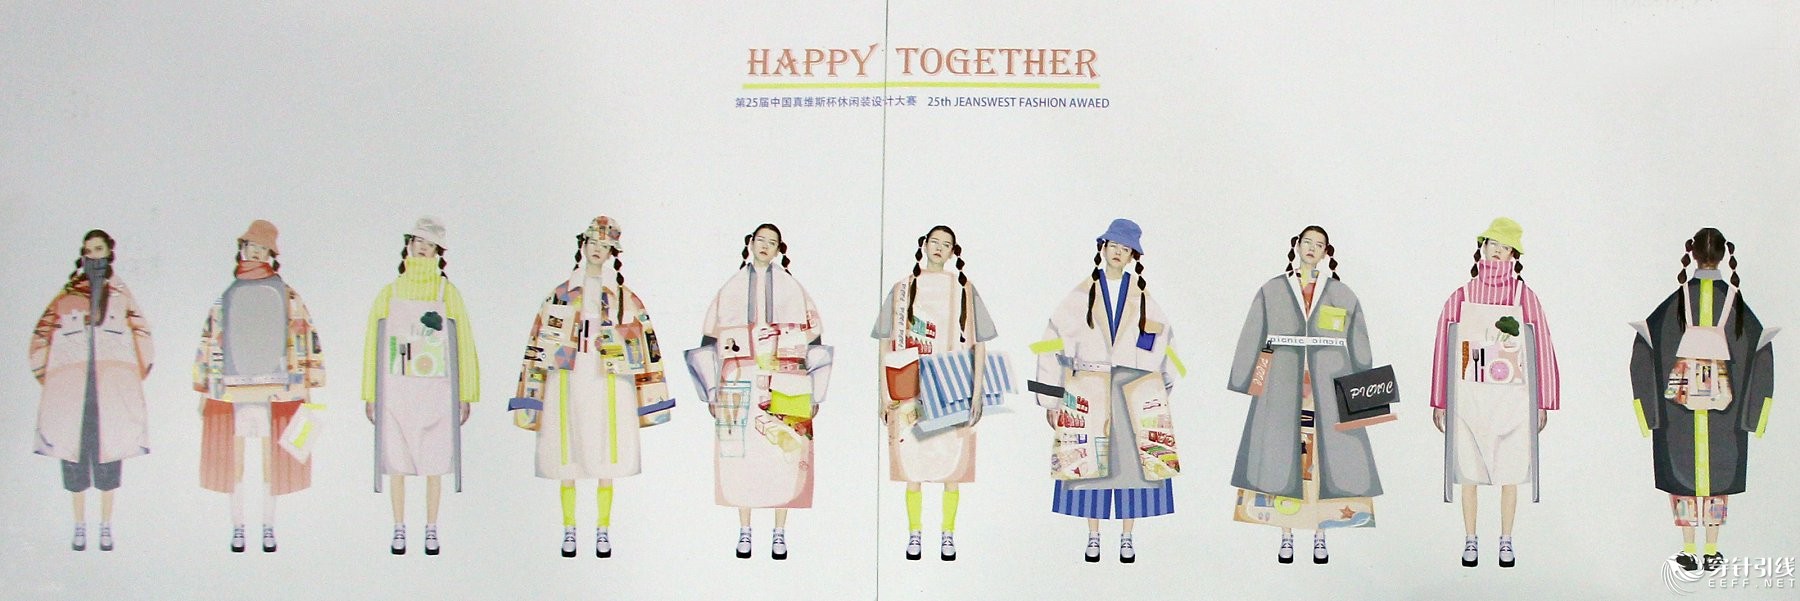 ĴWbWԺ-˼S(Happy together).jpg